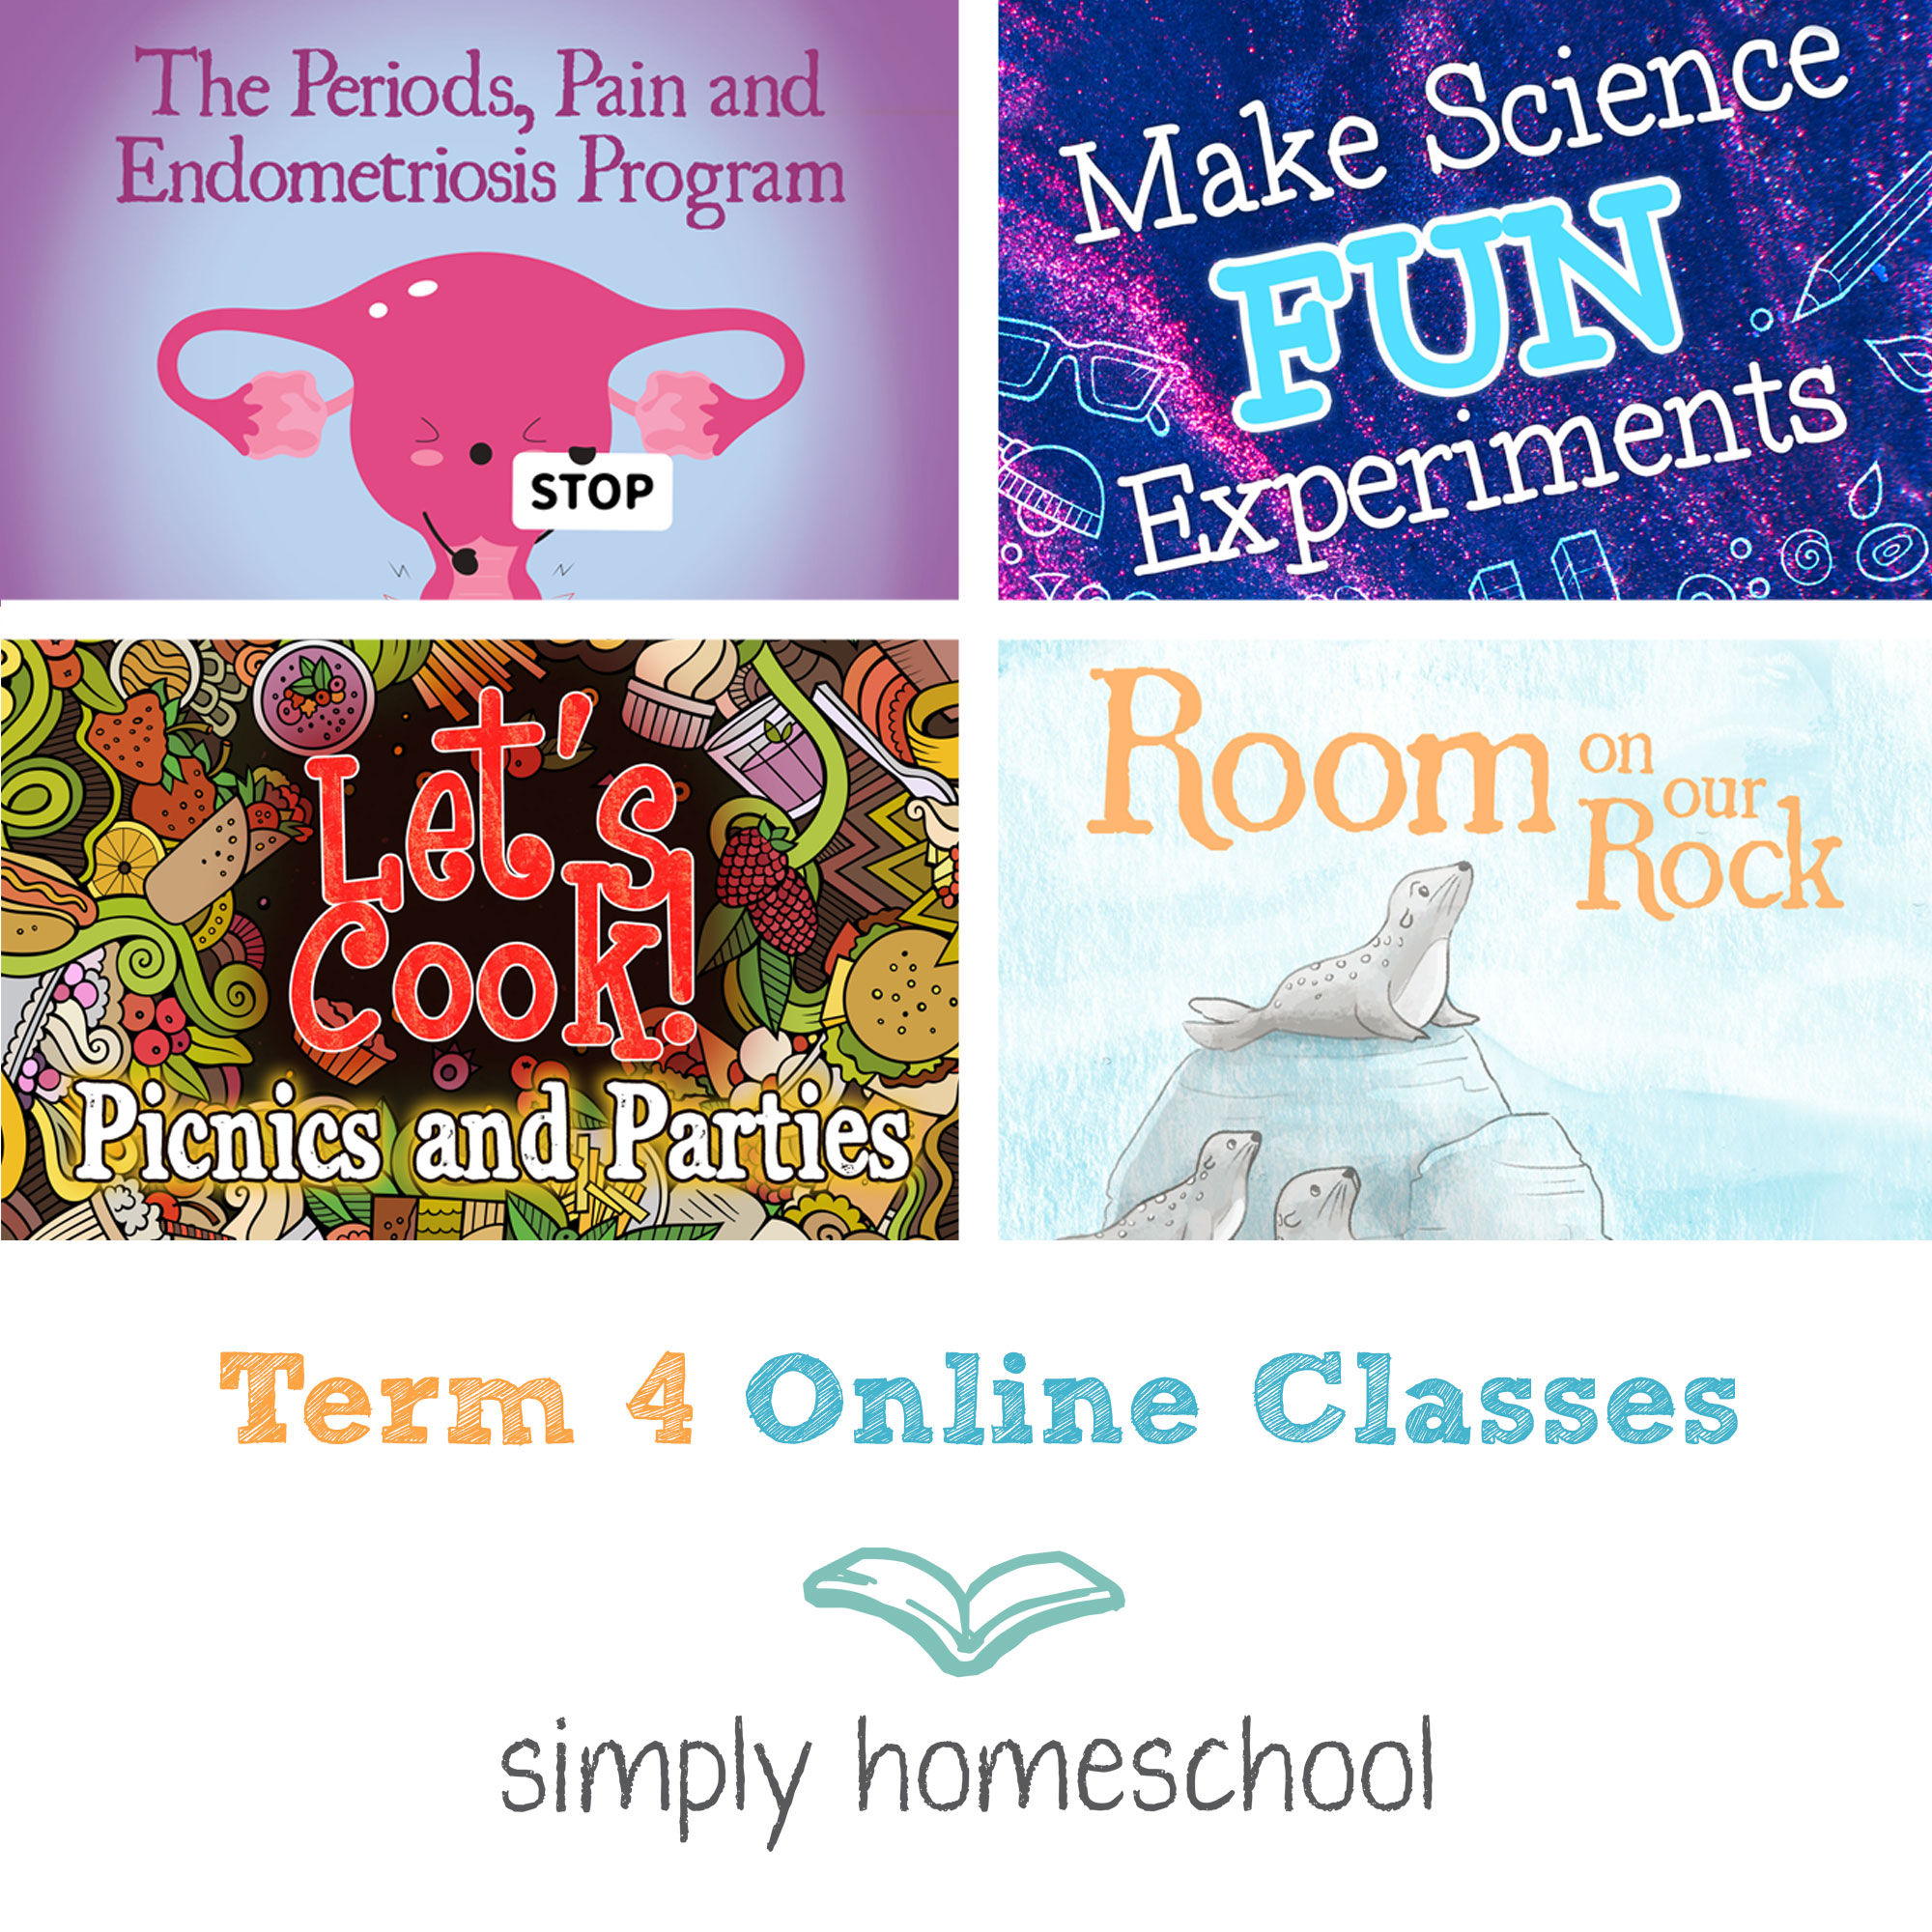 Term 4 Online Classes